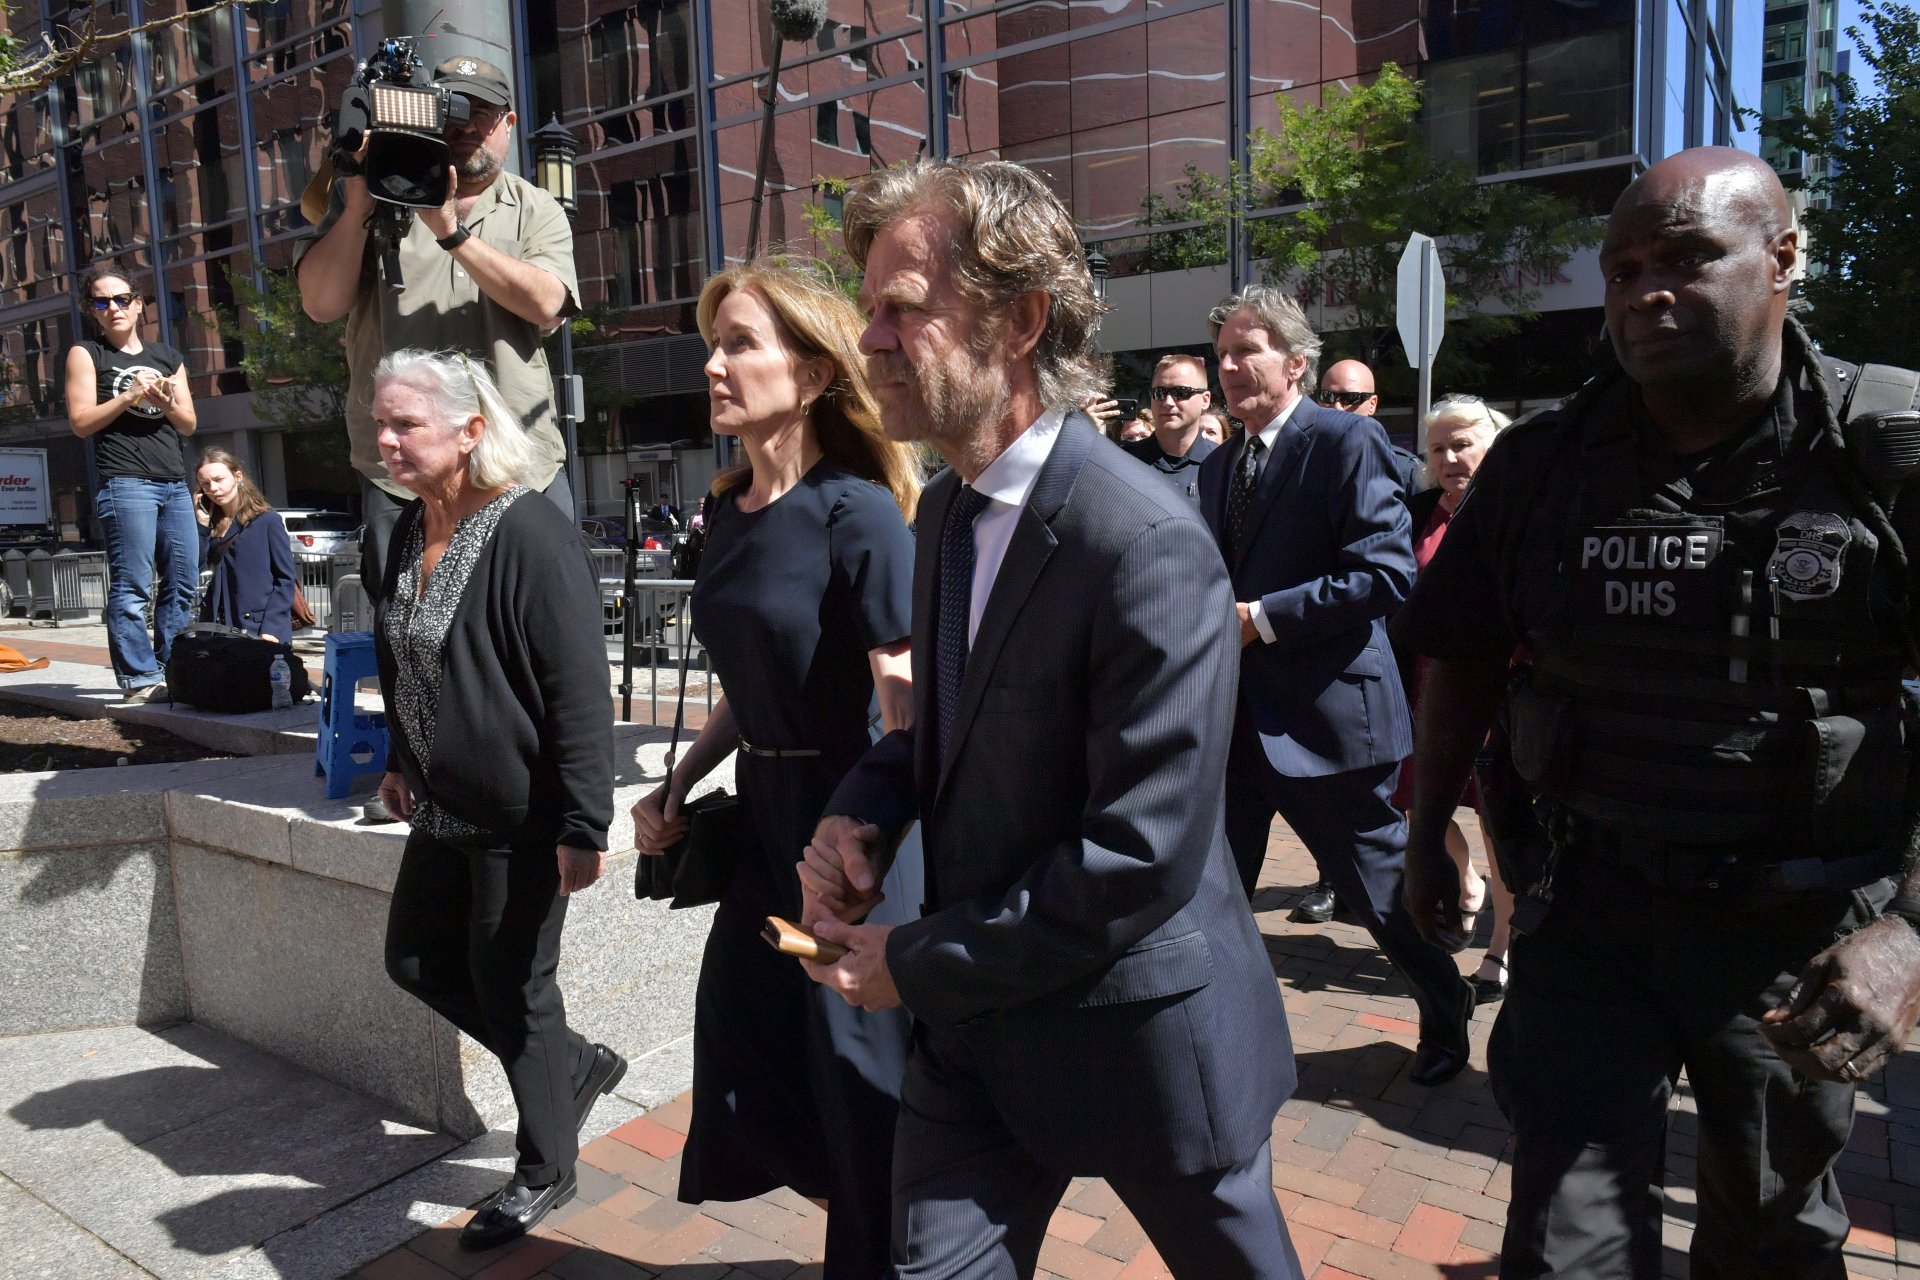 Фелисити Хъфман и съпругът ѝ Уилям Мейси пристигат в сградата на американския съд "Джон Мокли" за изслушването на Хъфман за ролята ѝ в скандала с приема в колеж, септември 2019 г.